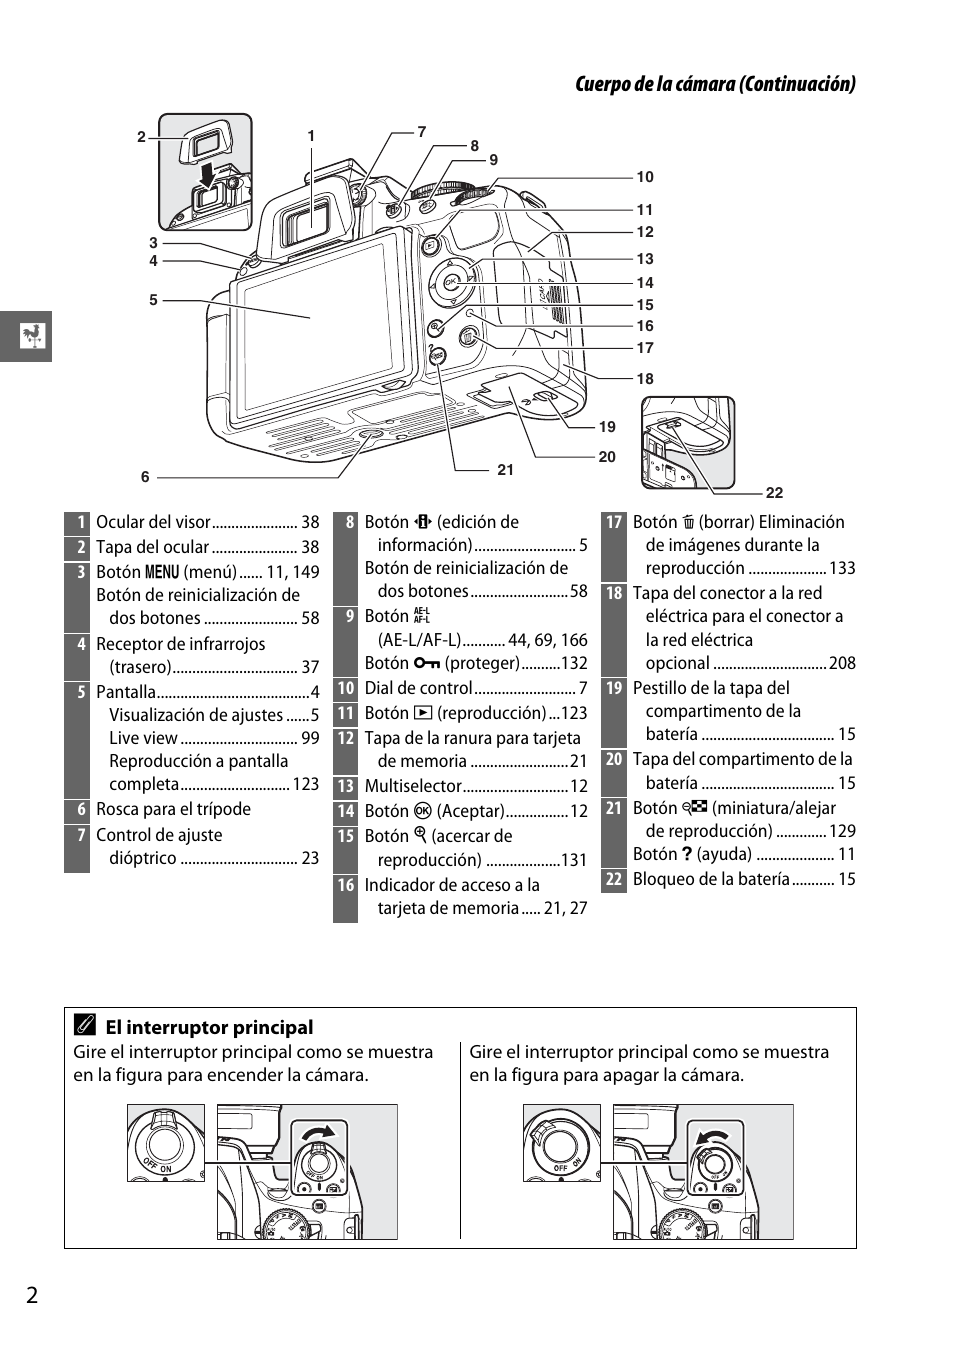 Cuerpo de la cámara (continuación) | D5100 Manual del usuario | 20 / 260 Original